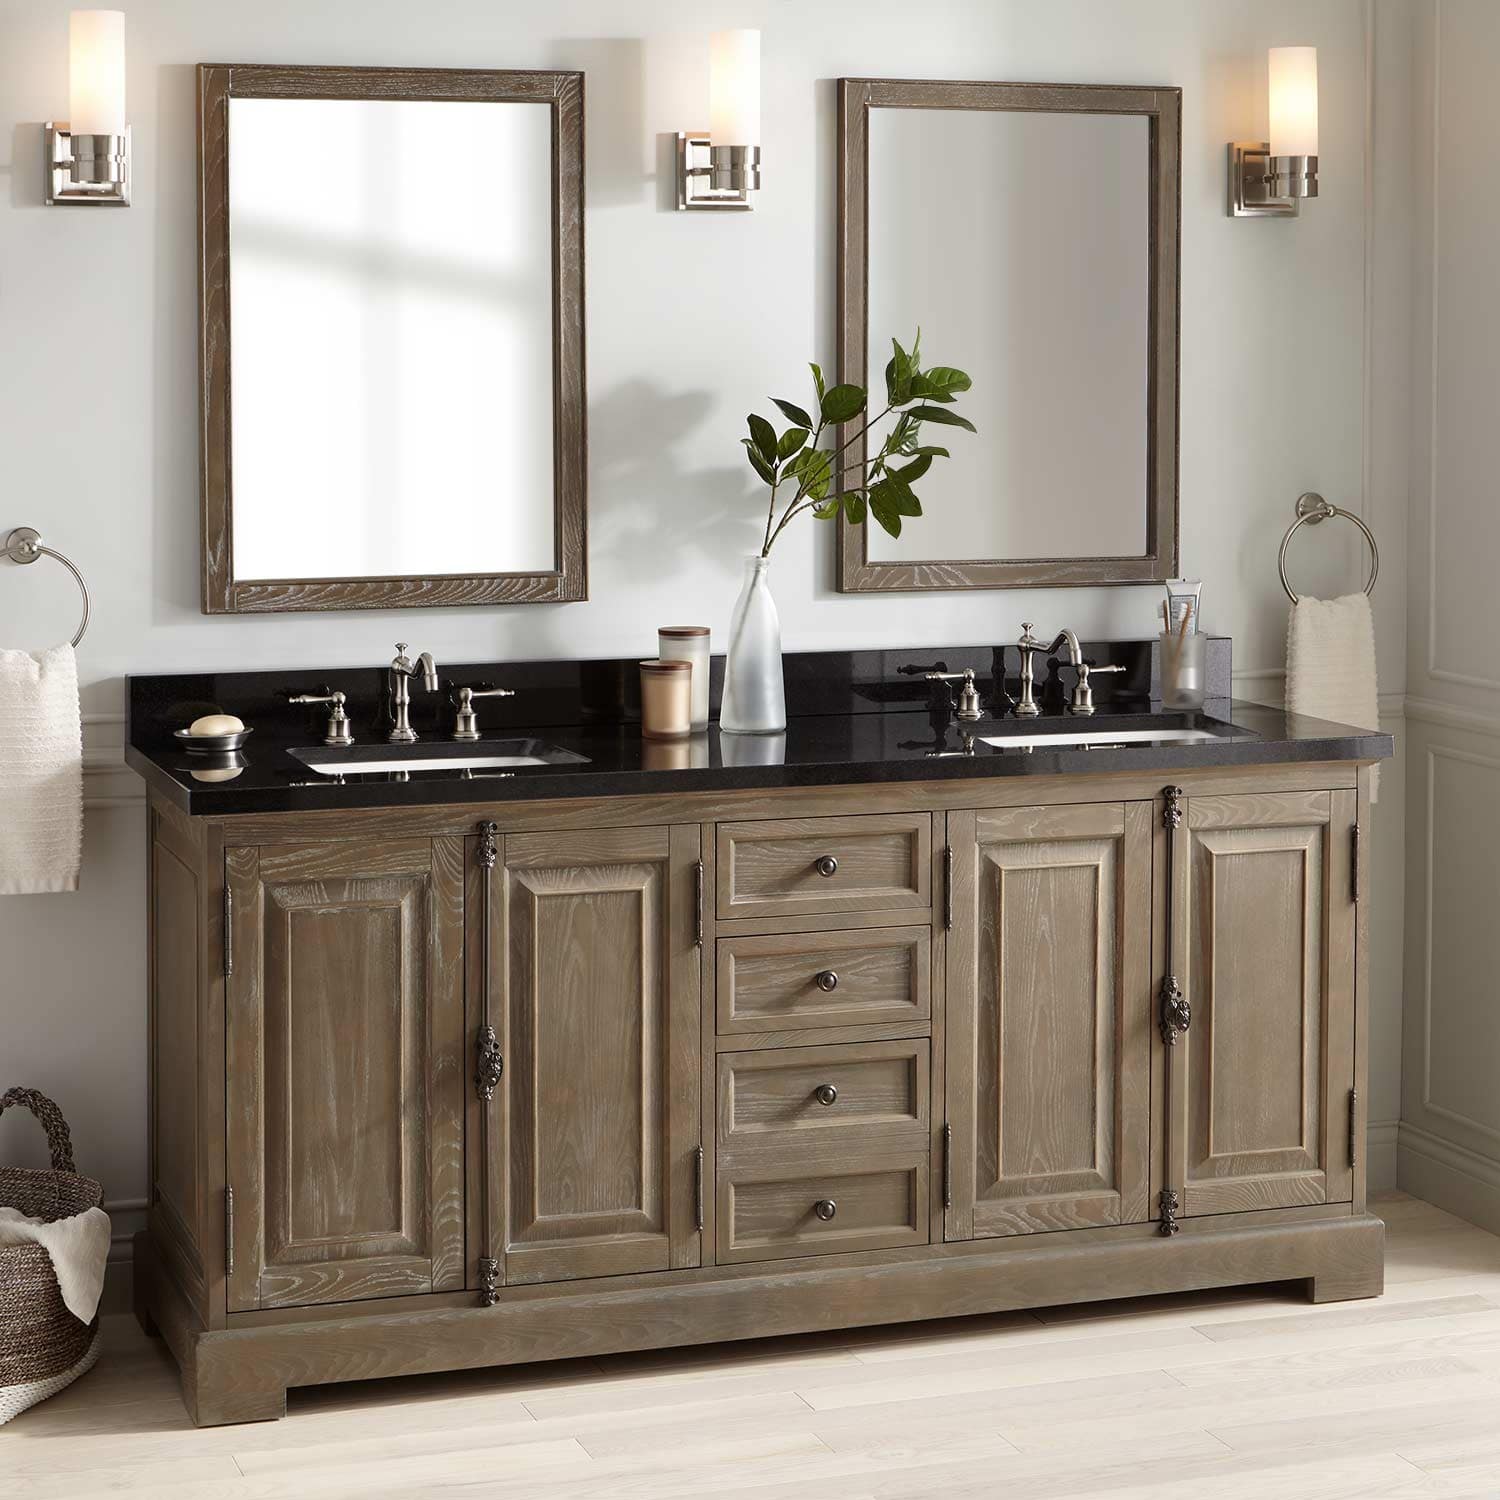 Solid Wood Cabinet Granite Vanity Top, Double Vanity With Granite Top 72